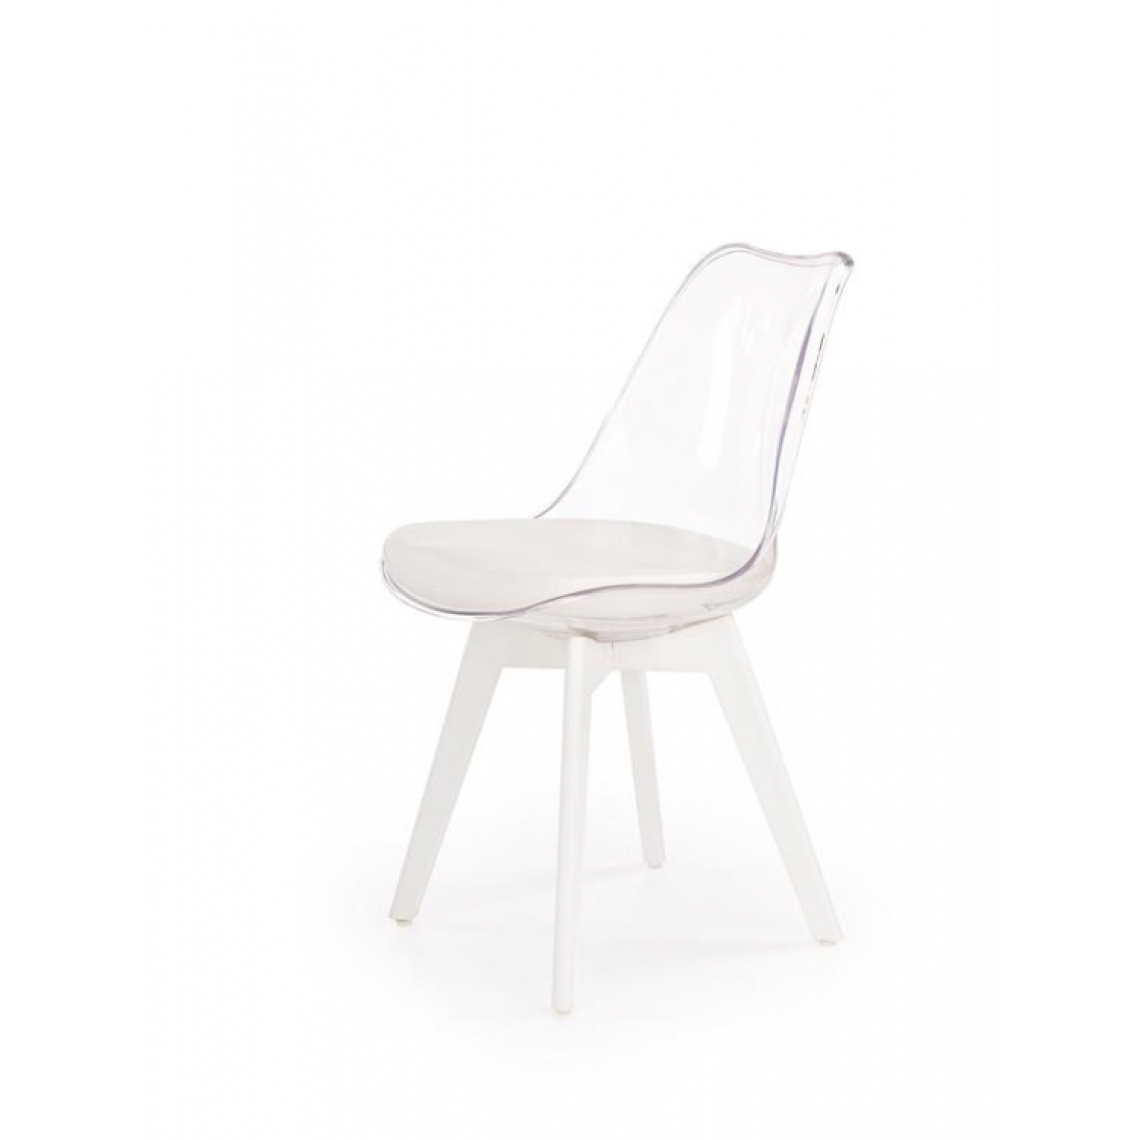 Carellia - Lot de 2 chaises 48 cm x 83 cm x 50 cm - Blanc - Chaises